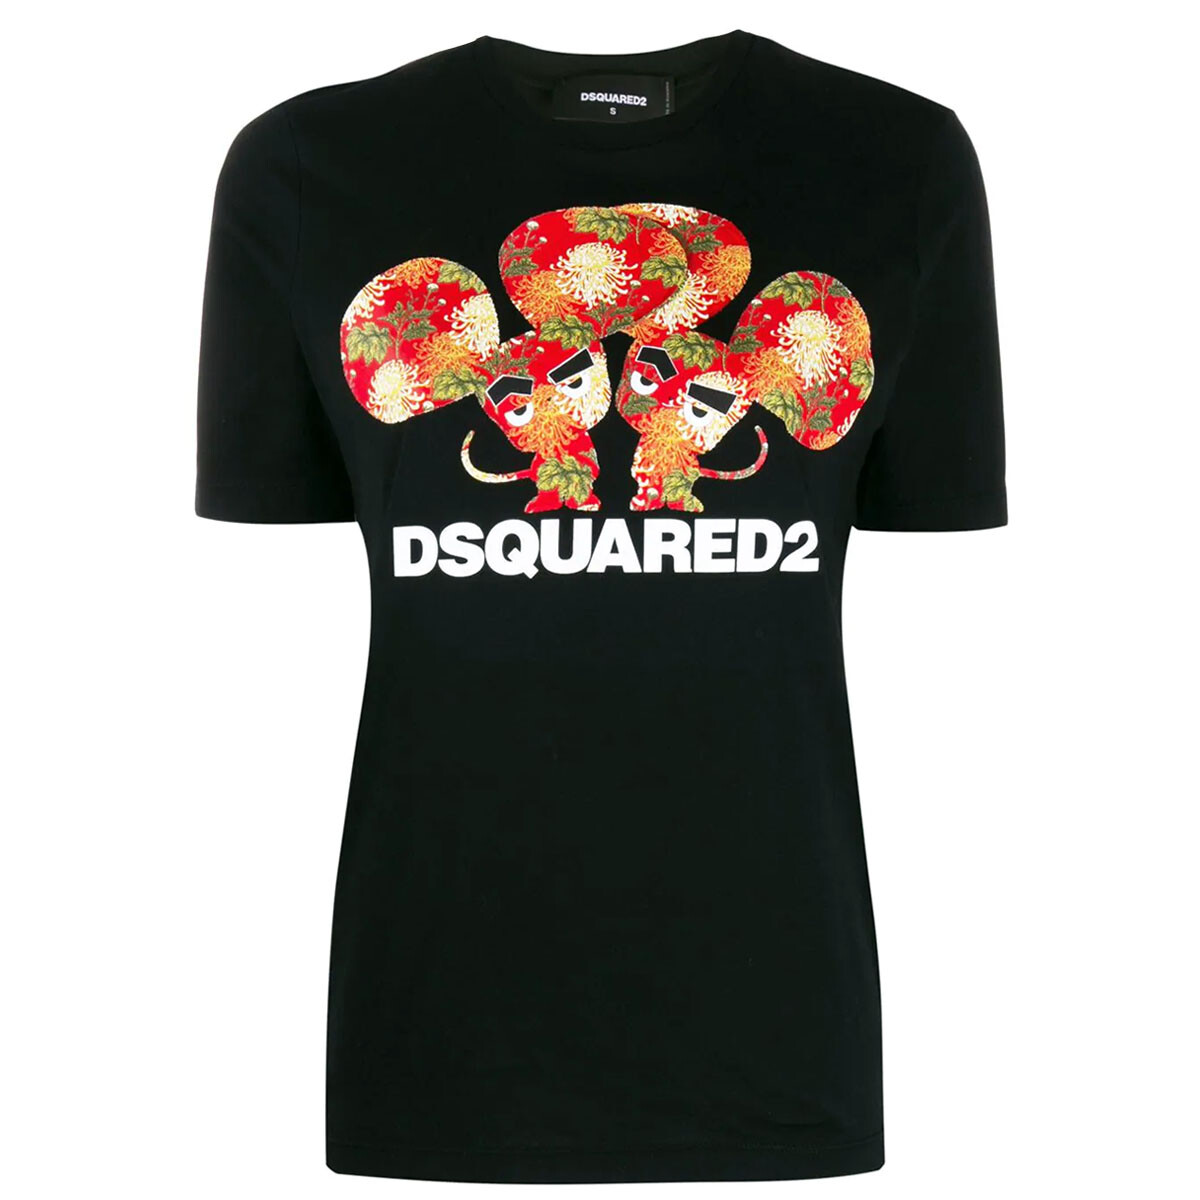 dsquared2 women's t shirt